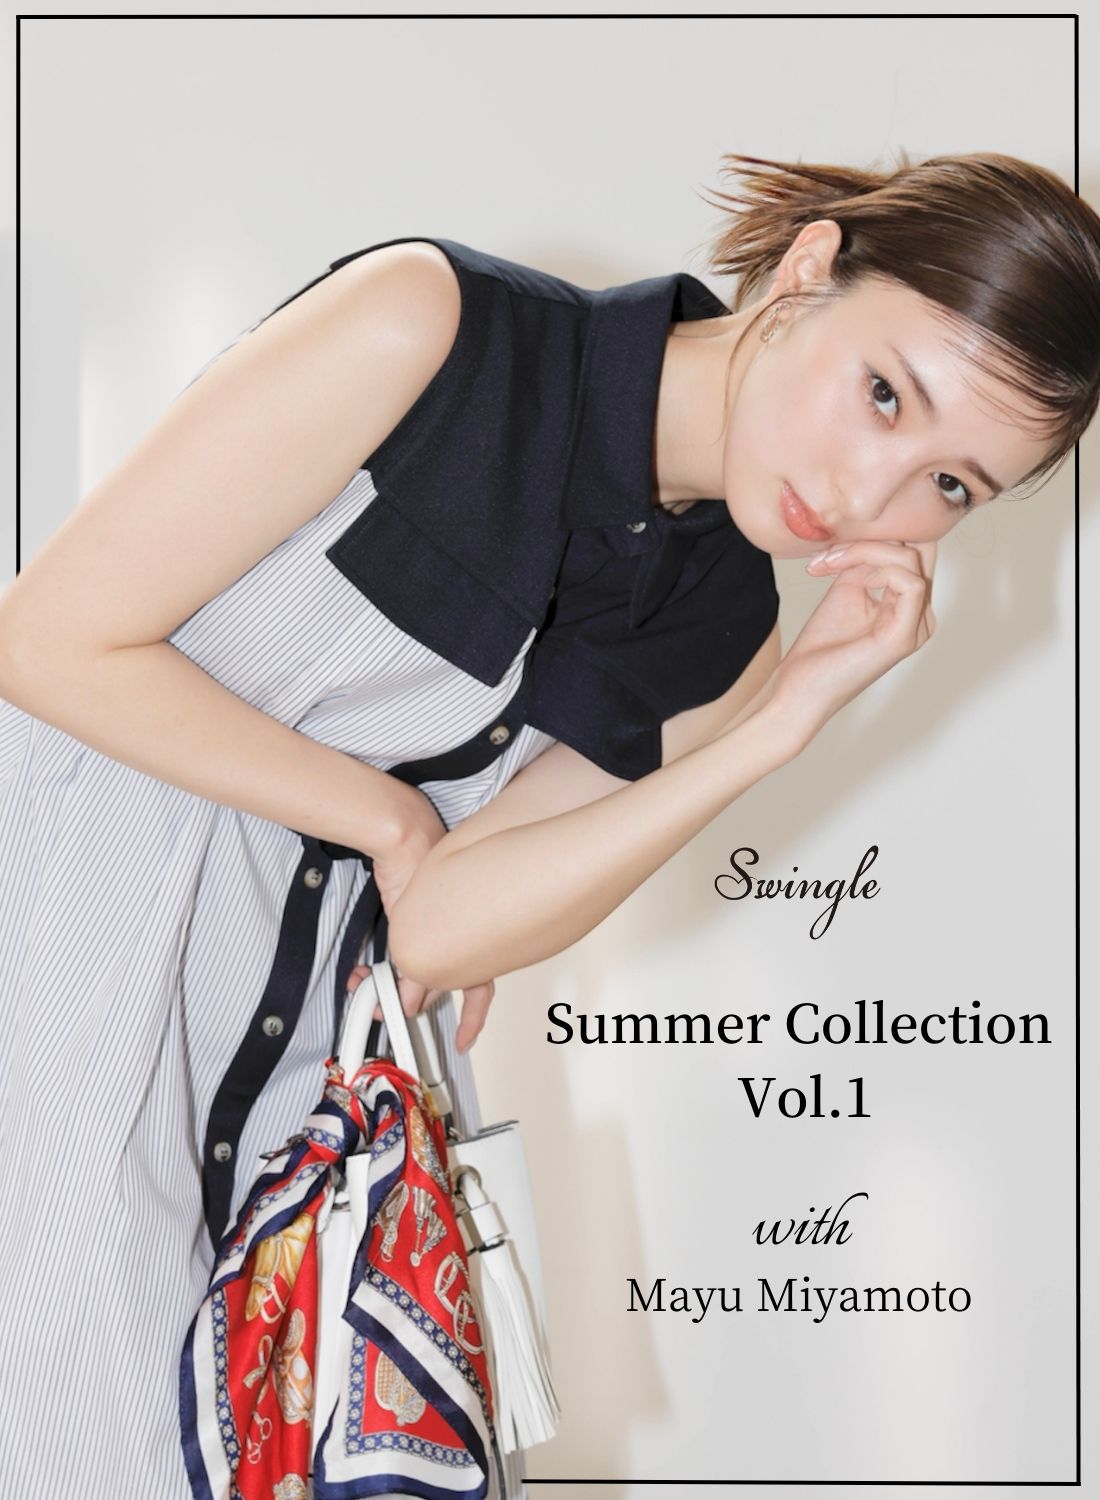 Swingle スウィングル Summer Collection